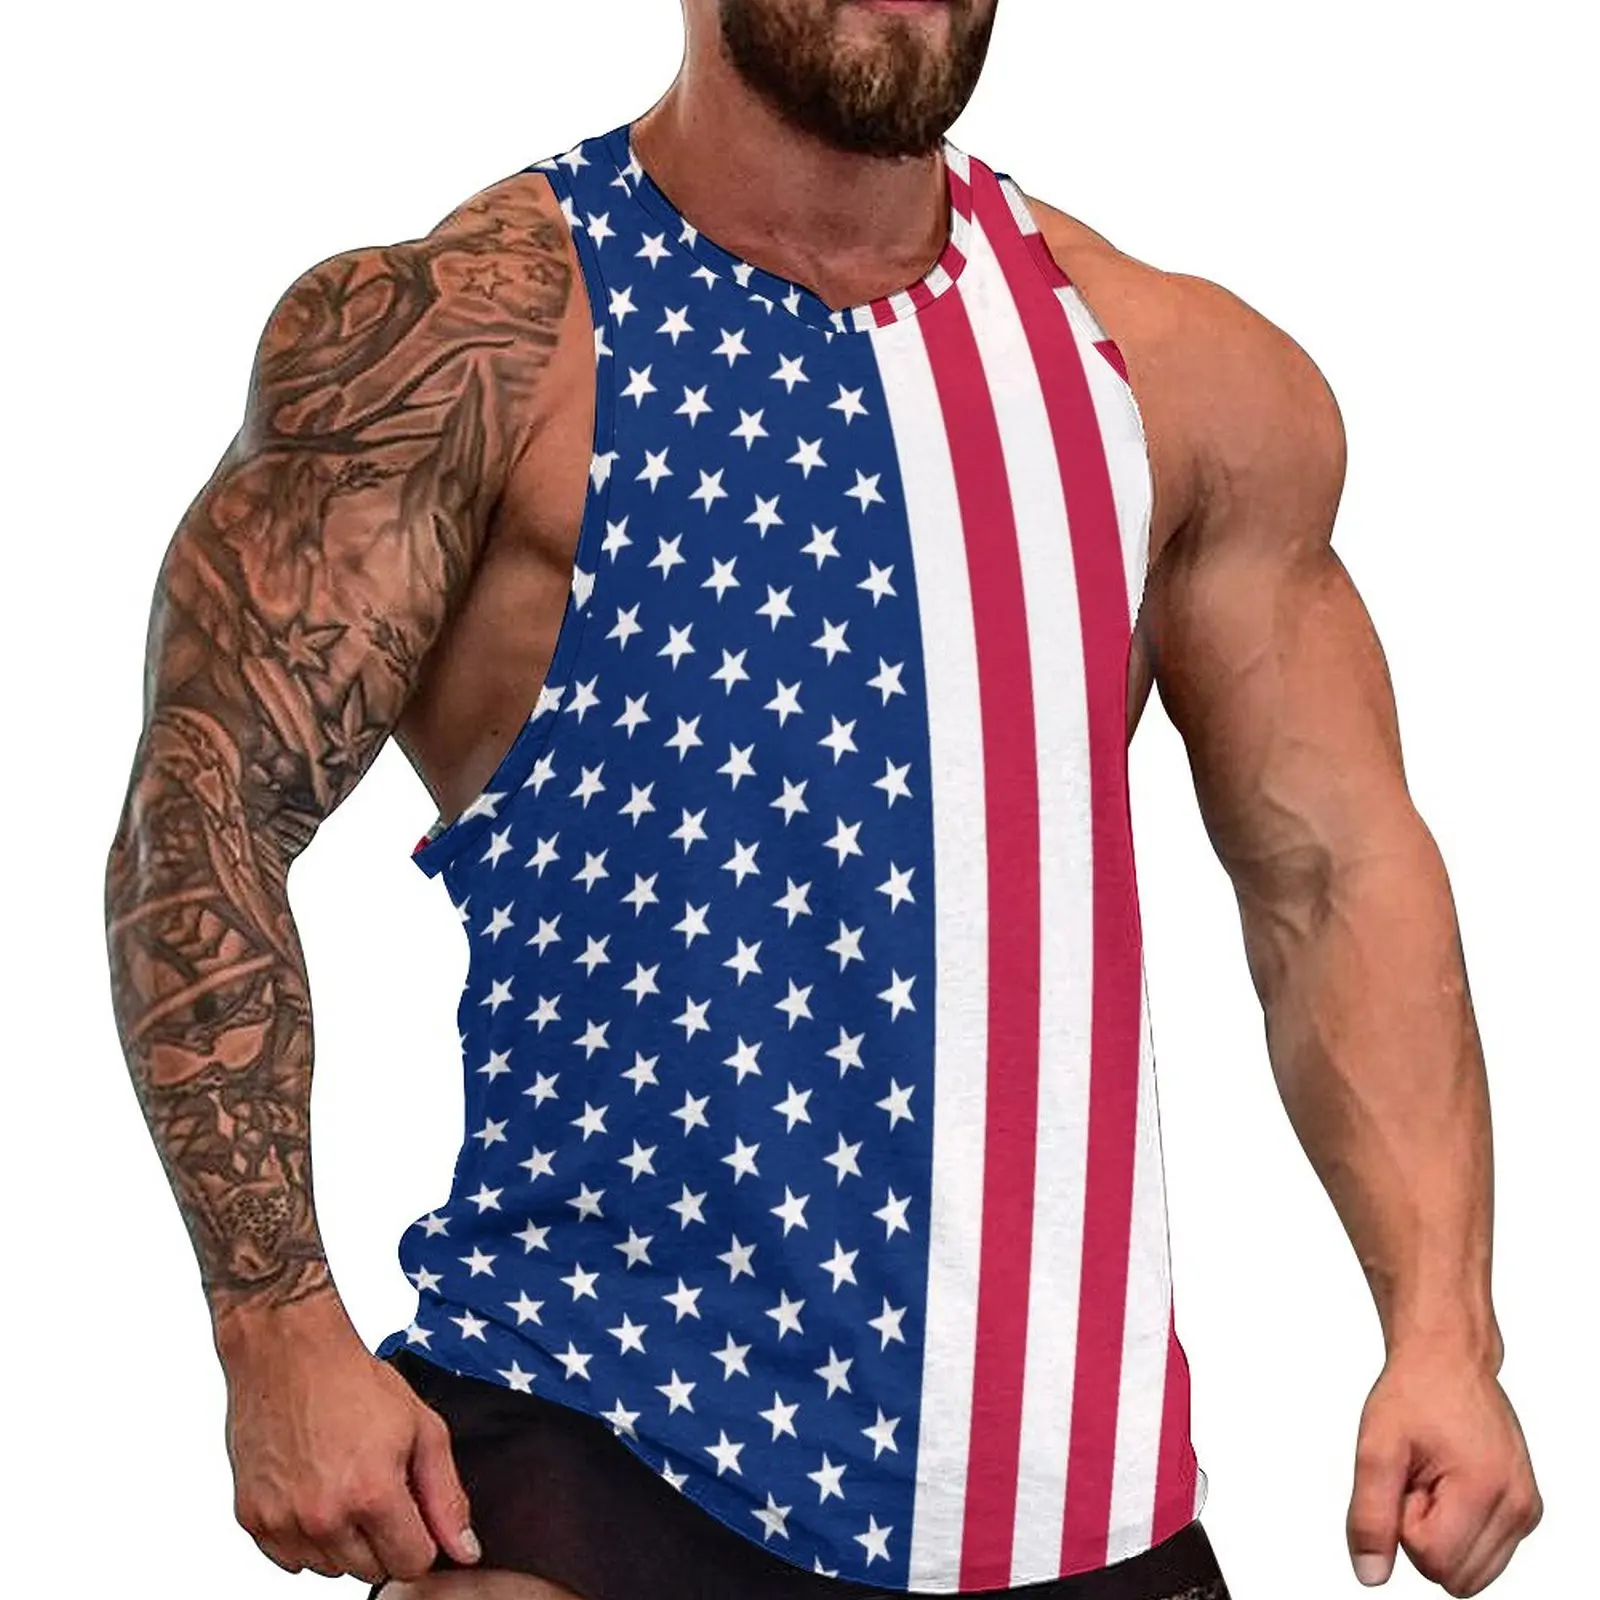 

Красная, белая, синяя летняя майка со звездами, патриотический Флаг США, топы для спортзала, мужские графические винтажные рубашки без рукавов